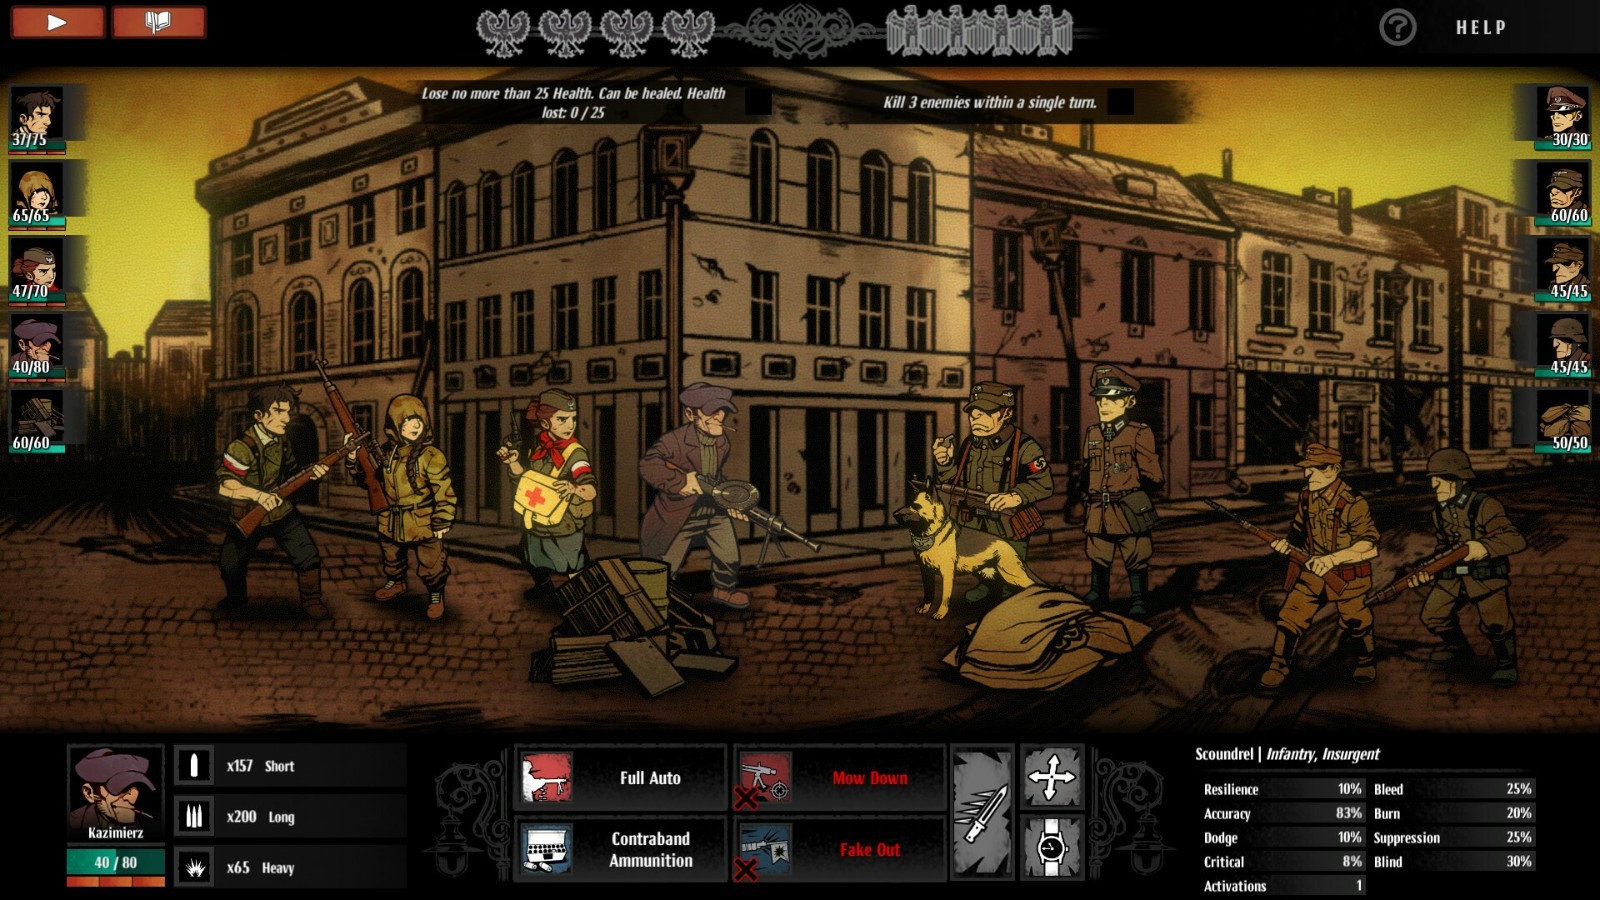 策略游戏《华沙》steam免费发布 二战背景回合制经典